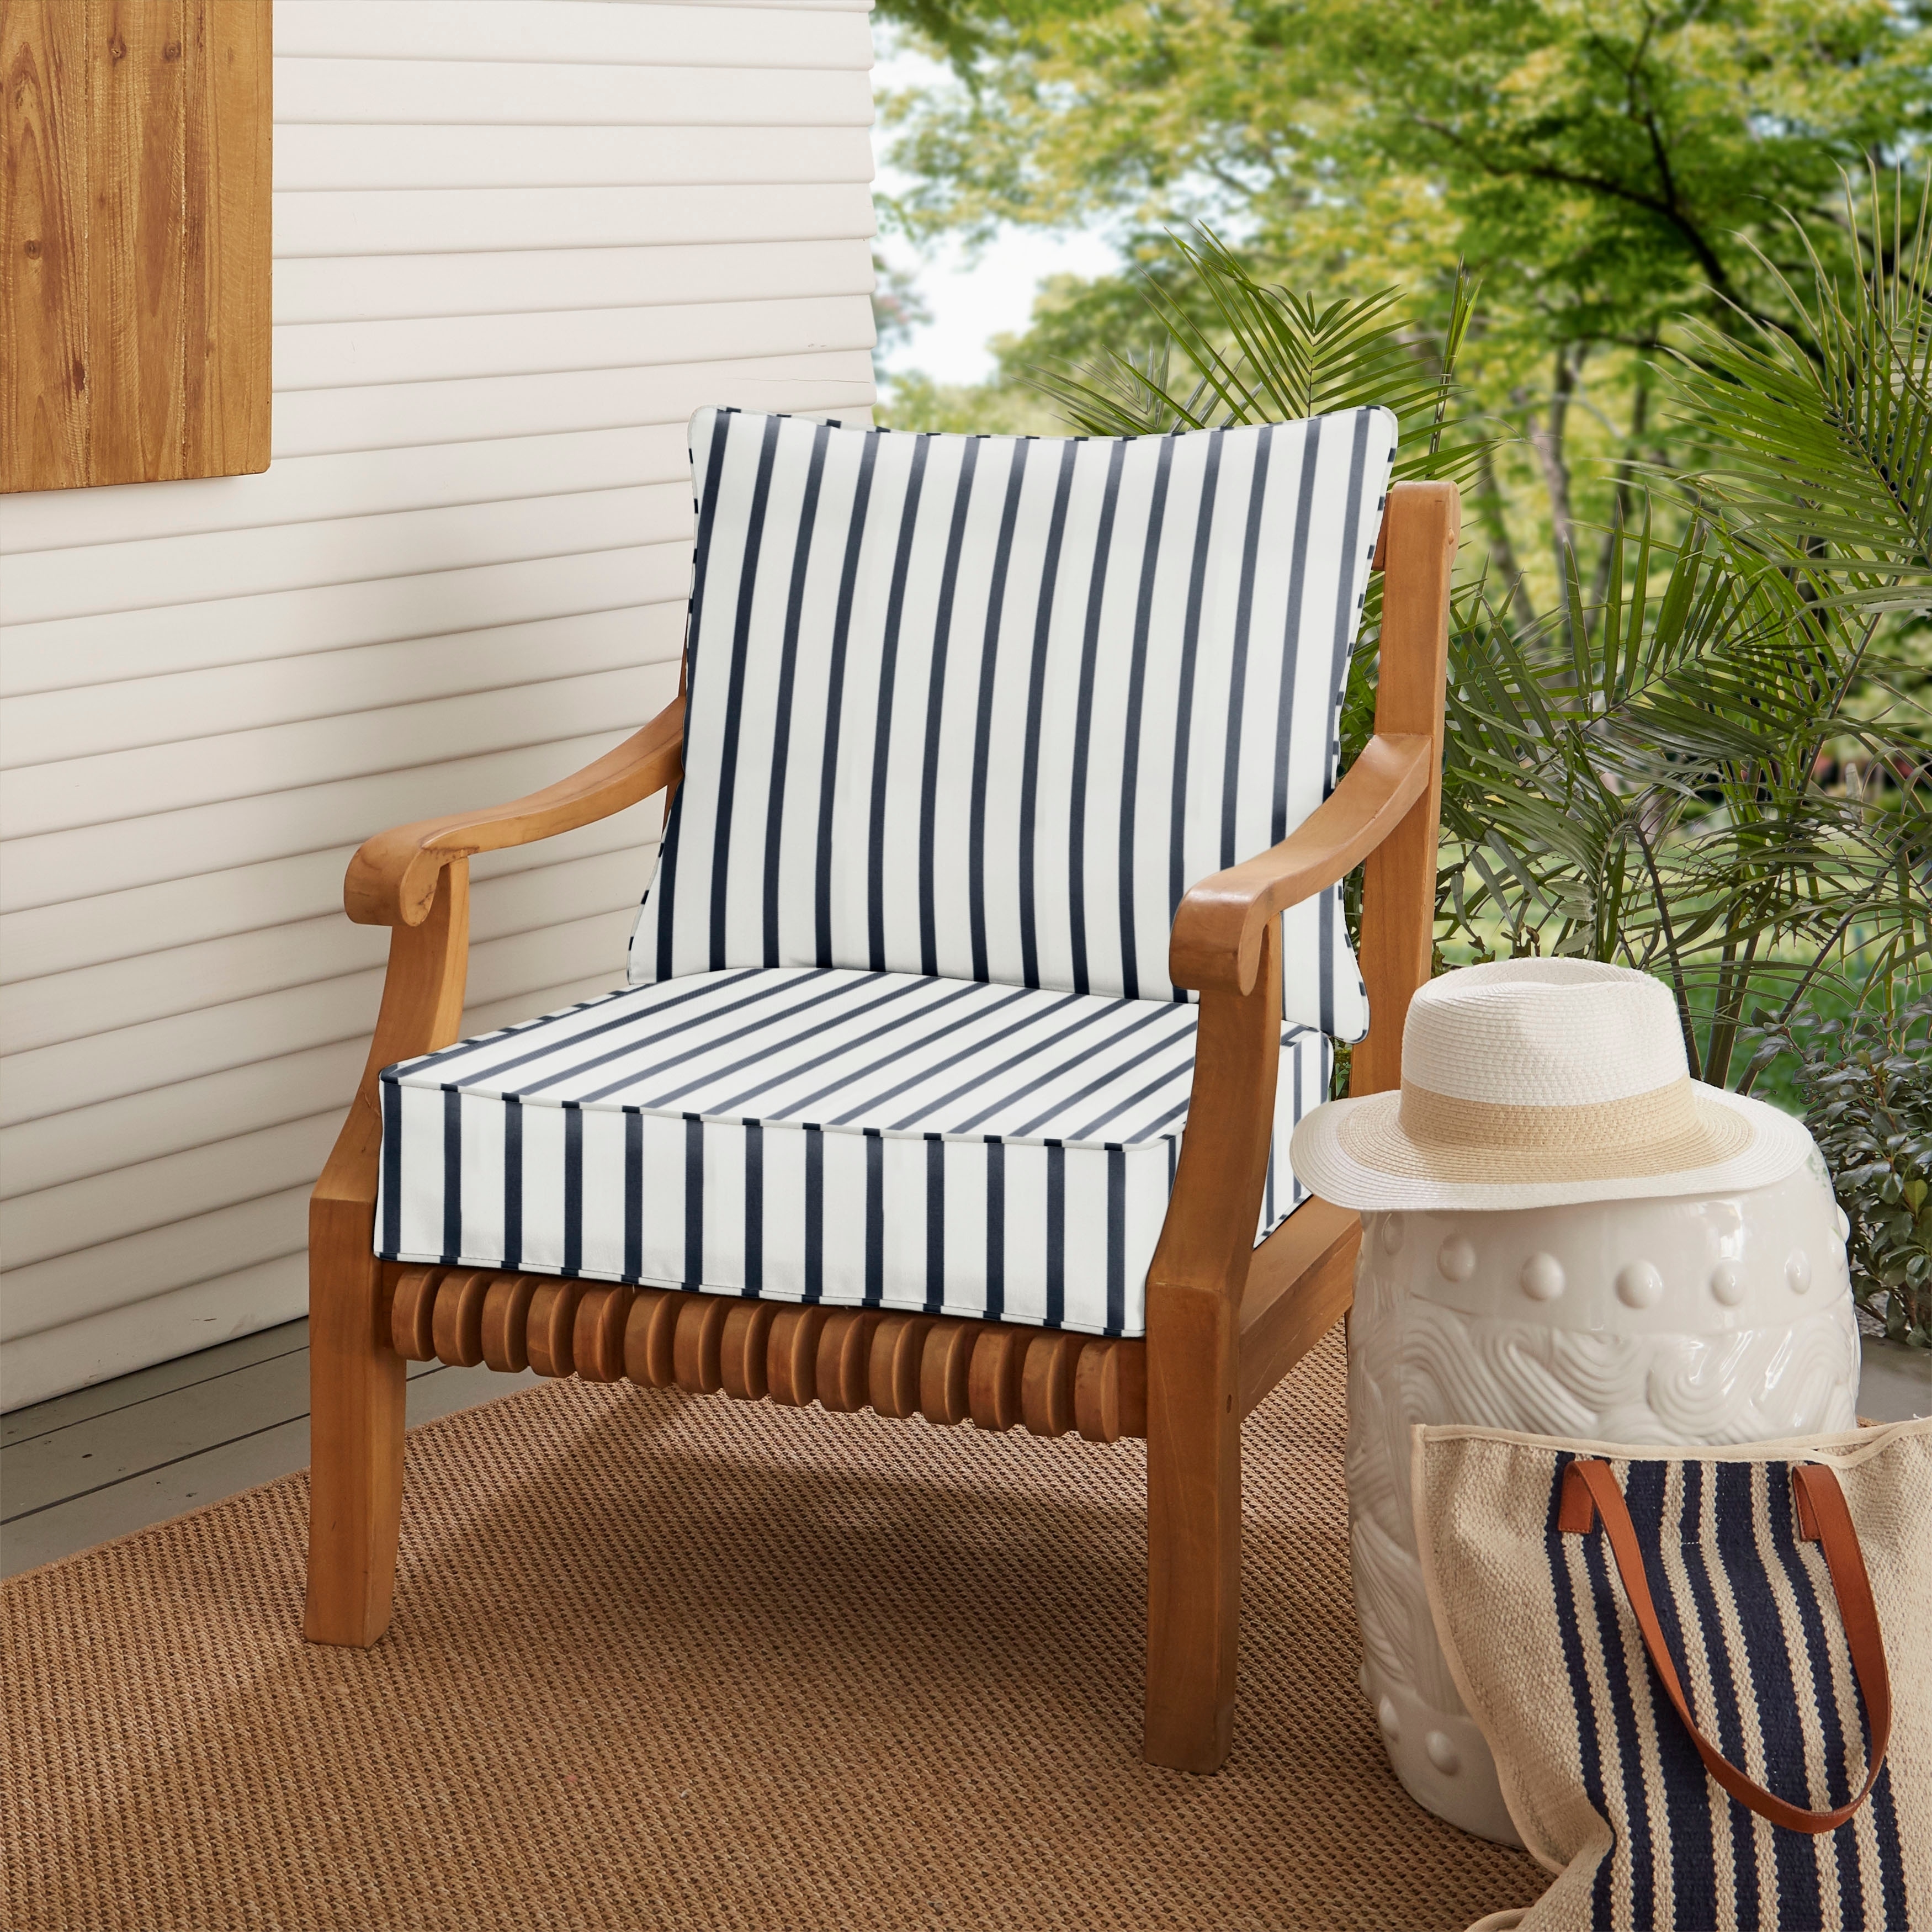 Sunbrella Lido Indigo Indoor Outdoor Chair Cushion And Pillow Set C5fa6e36 3d38 431e Be83 D202144352cc 